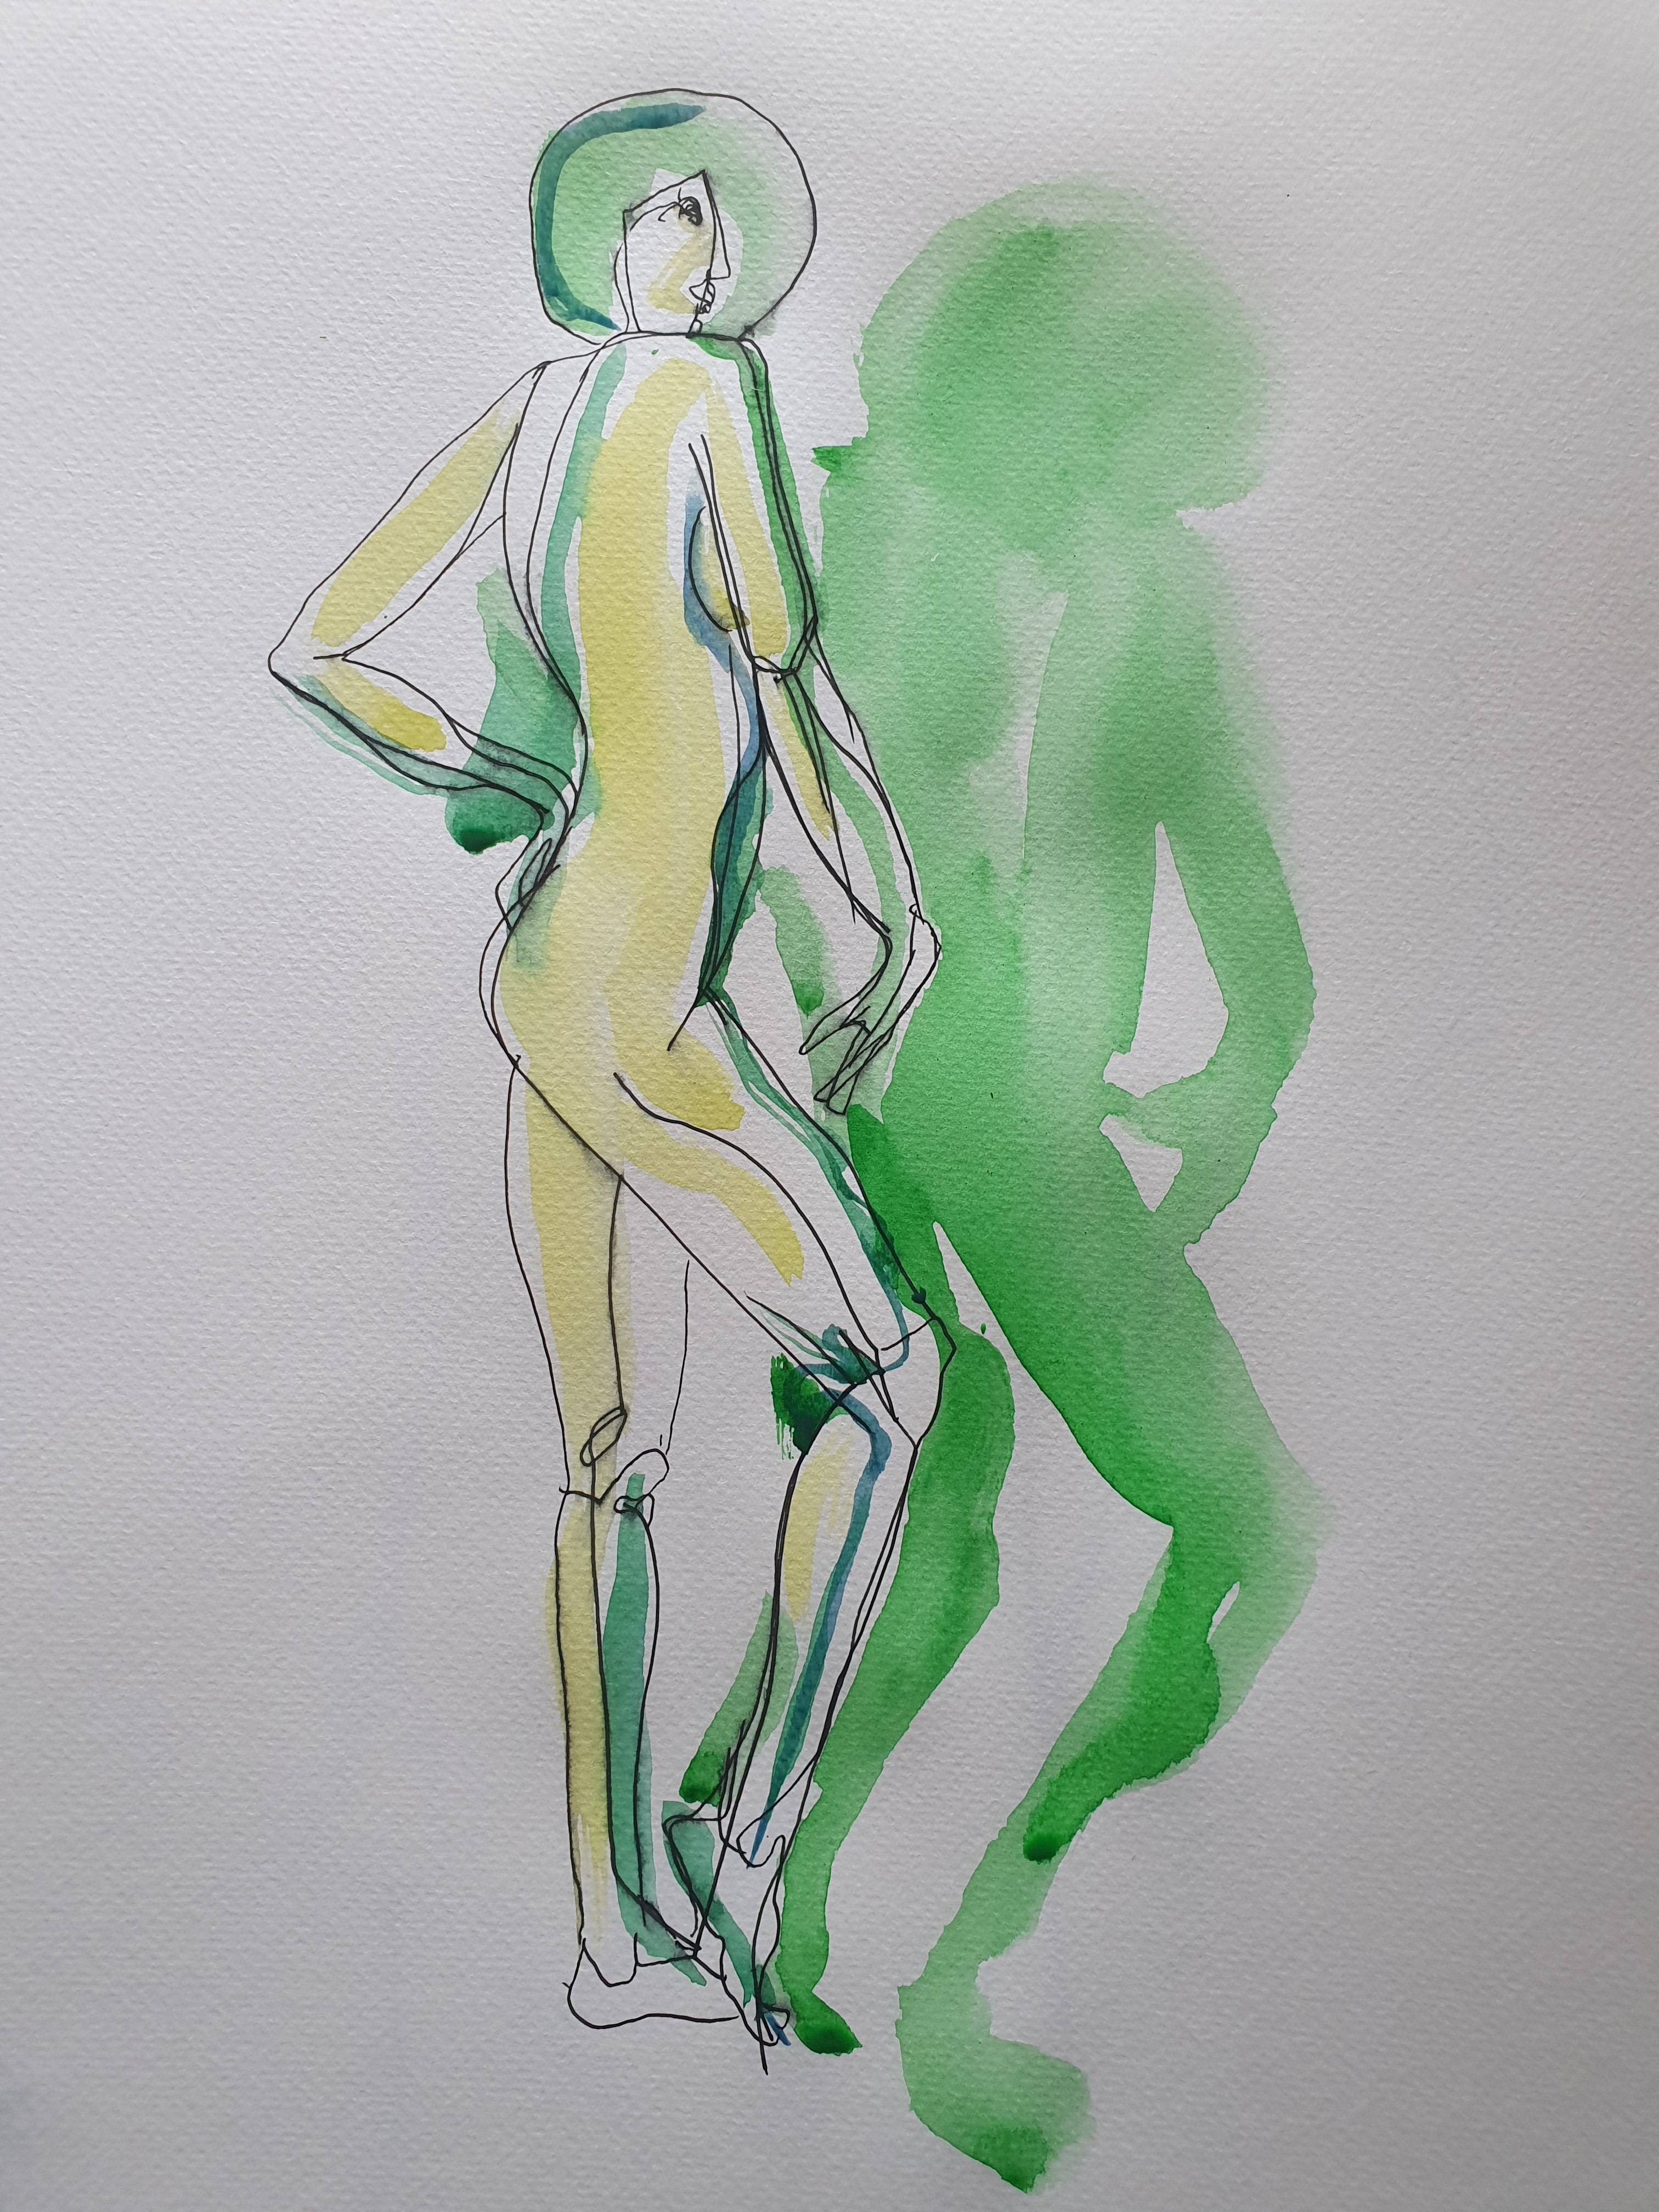  Dessin aquarelle feutre vert et jaune  cours de dessin 